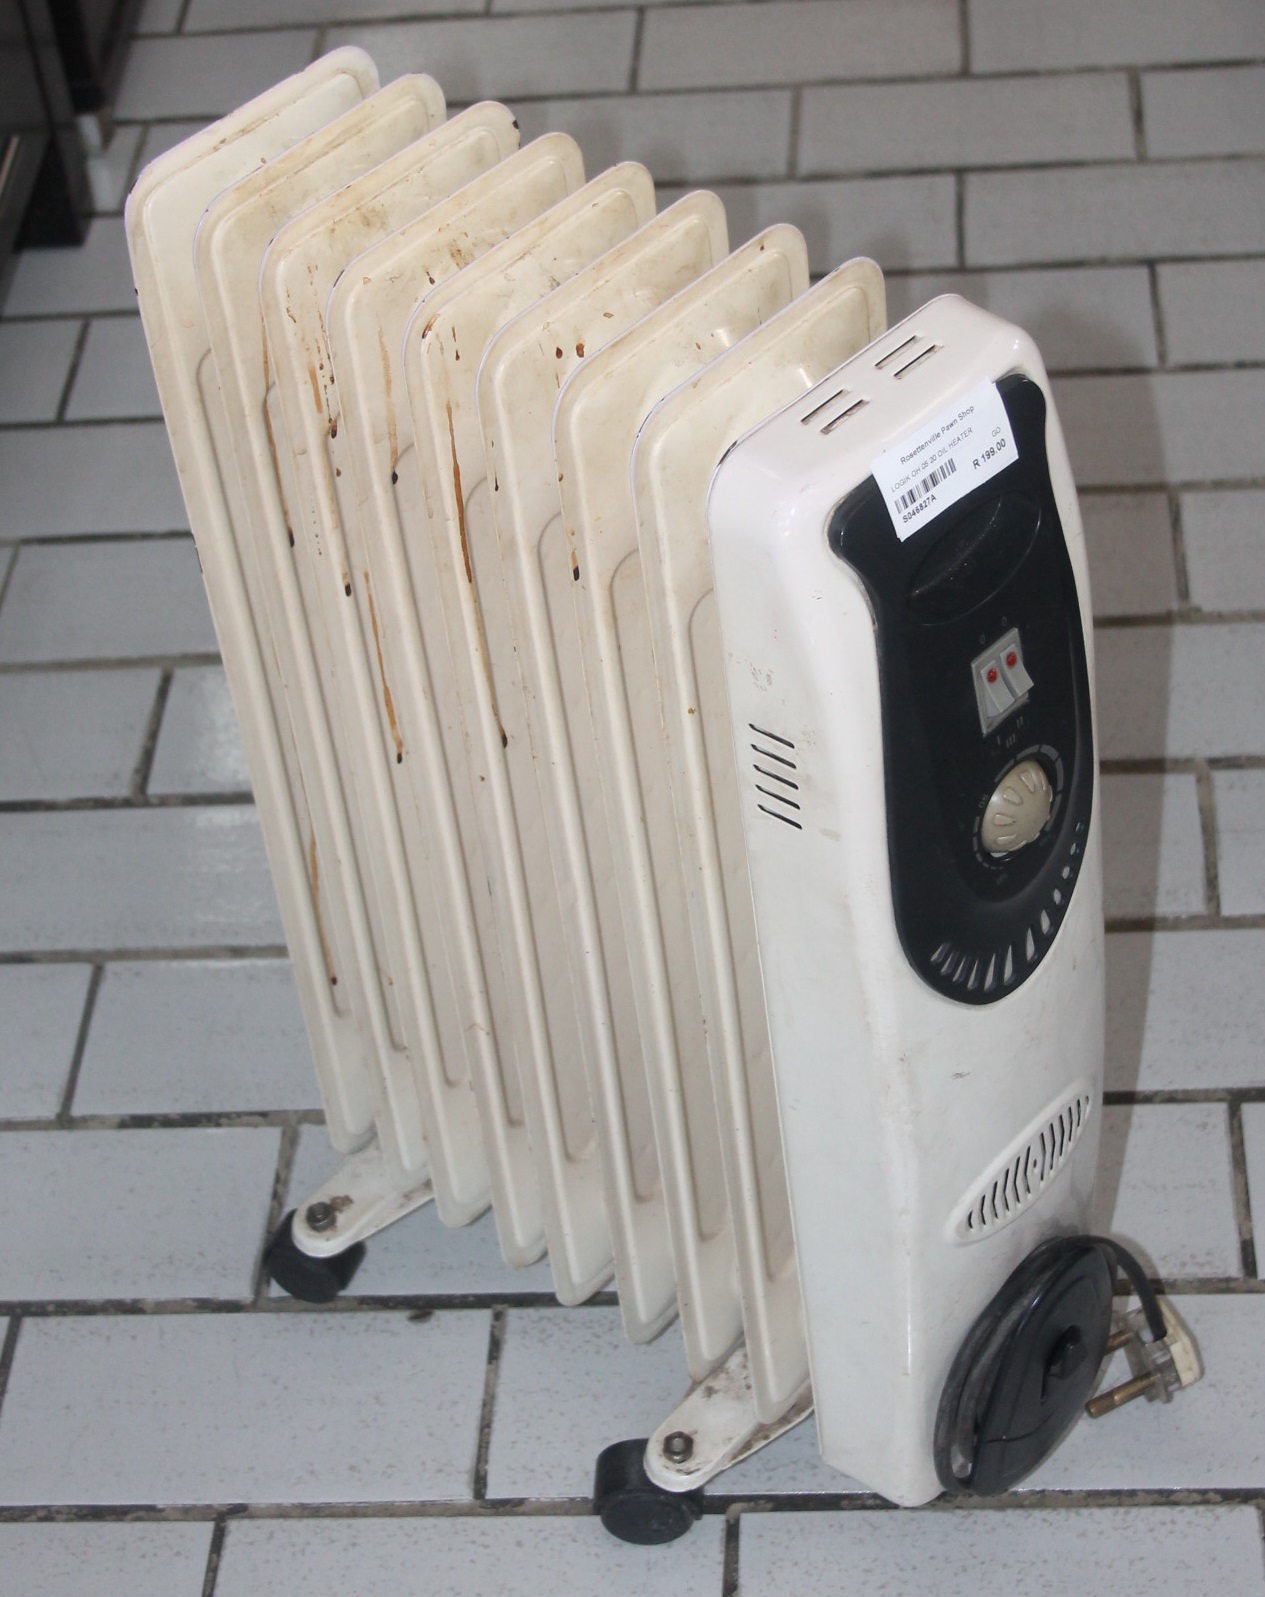 Logik oil heater S046827A #Rosettenvillepawnshop